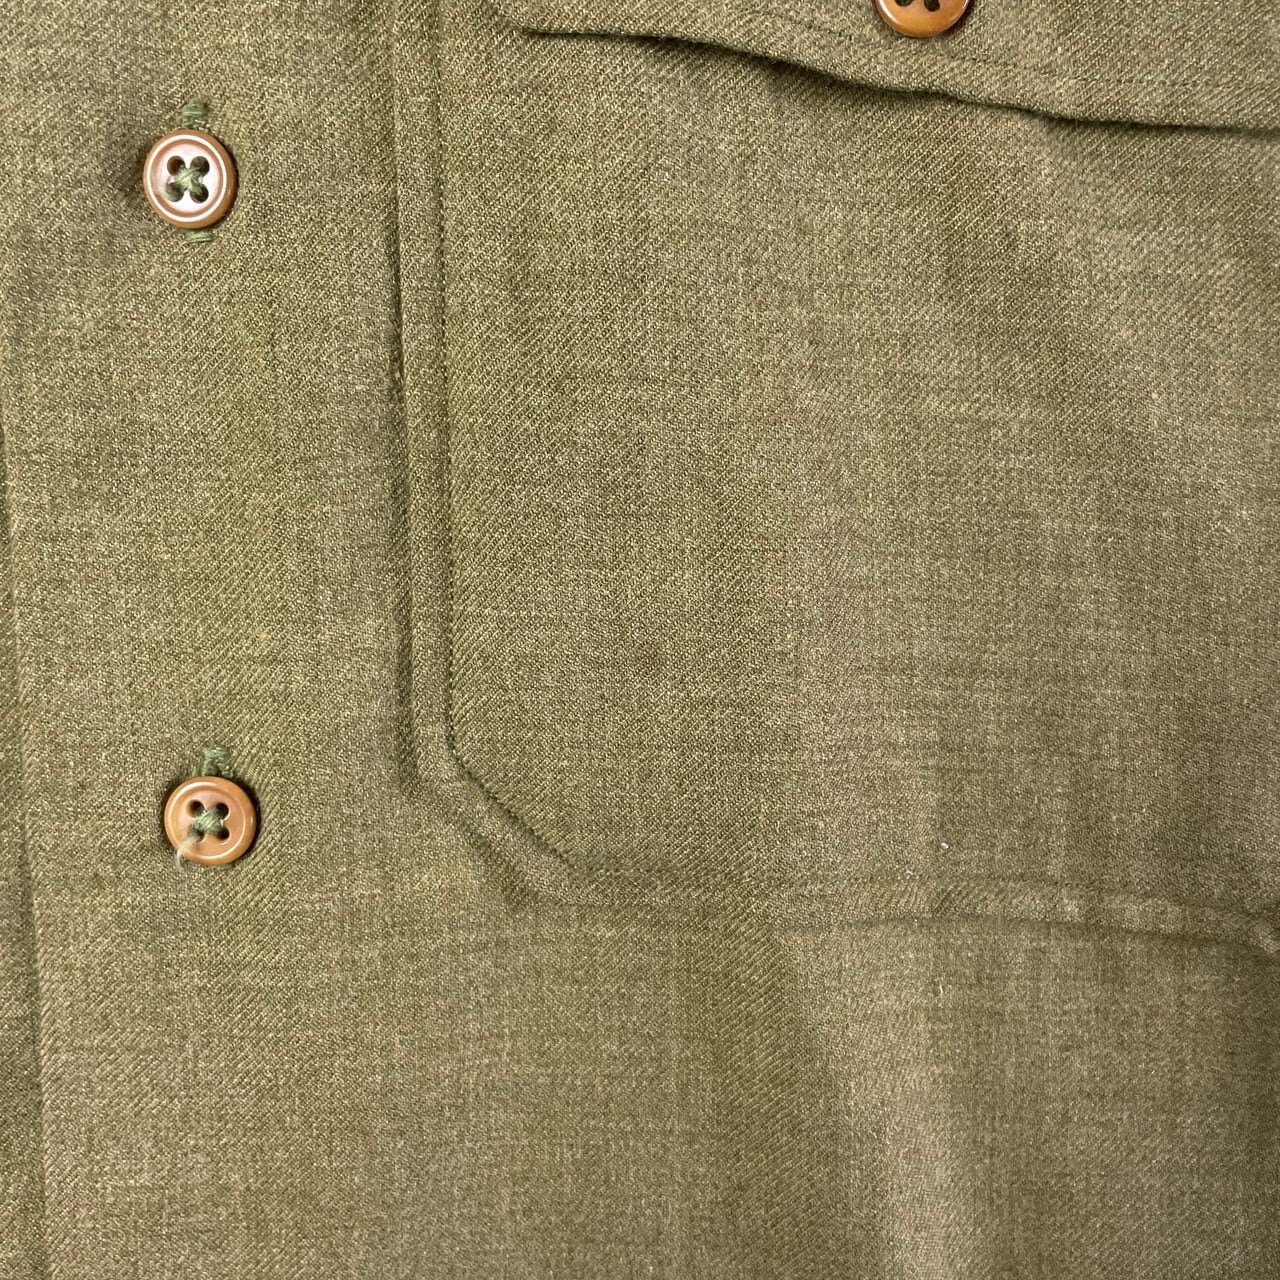 40年代 U.S.ARMY 米軍実品 ウール ミリタリーシャツ マスタードシャツ